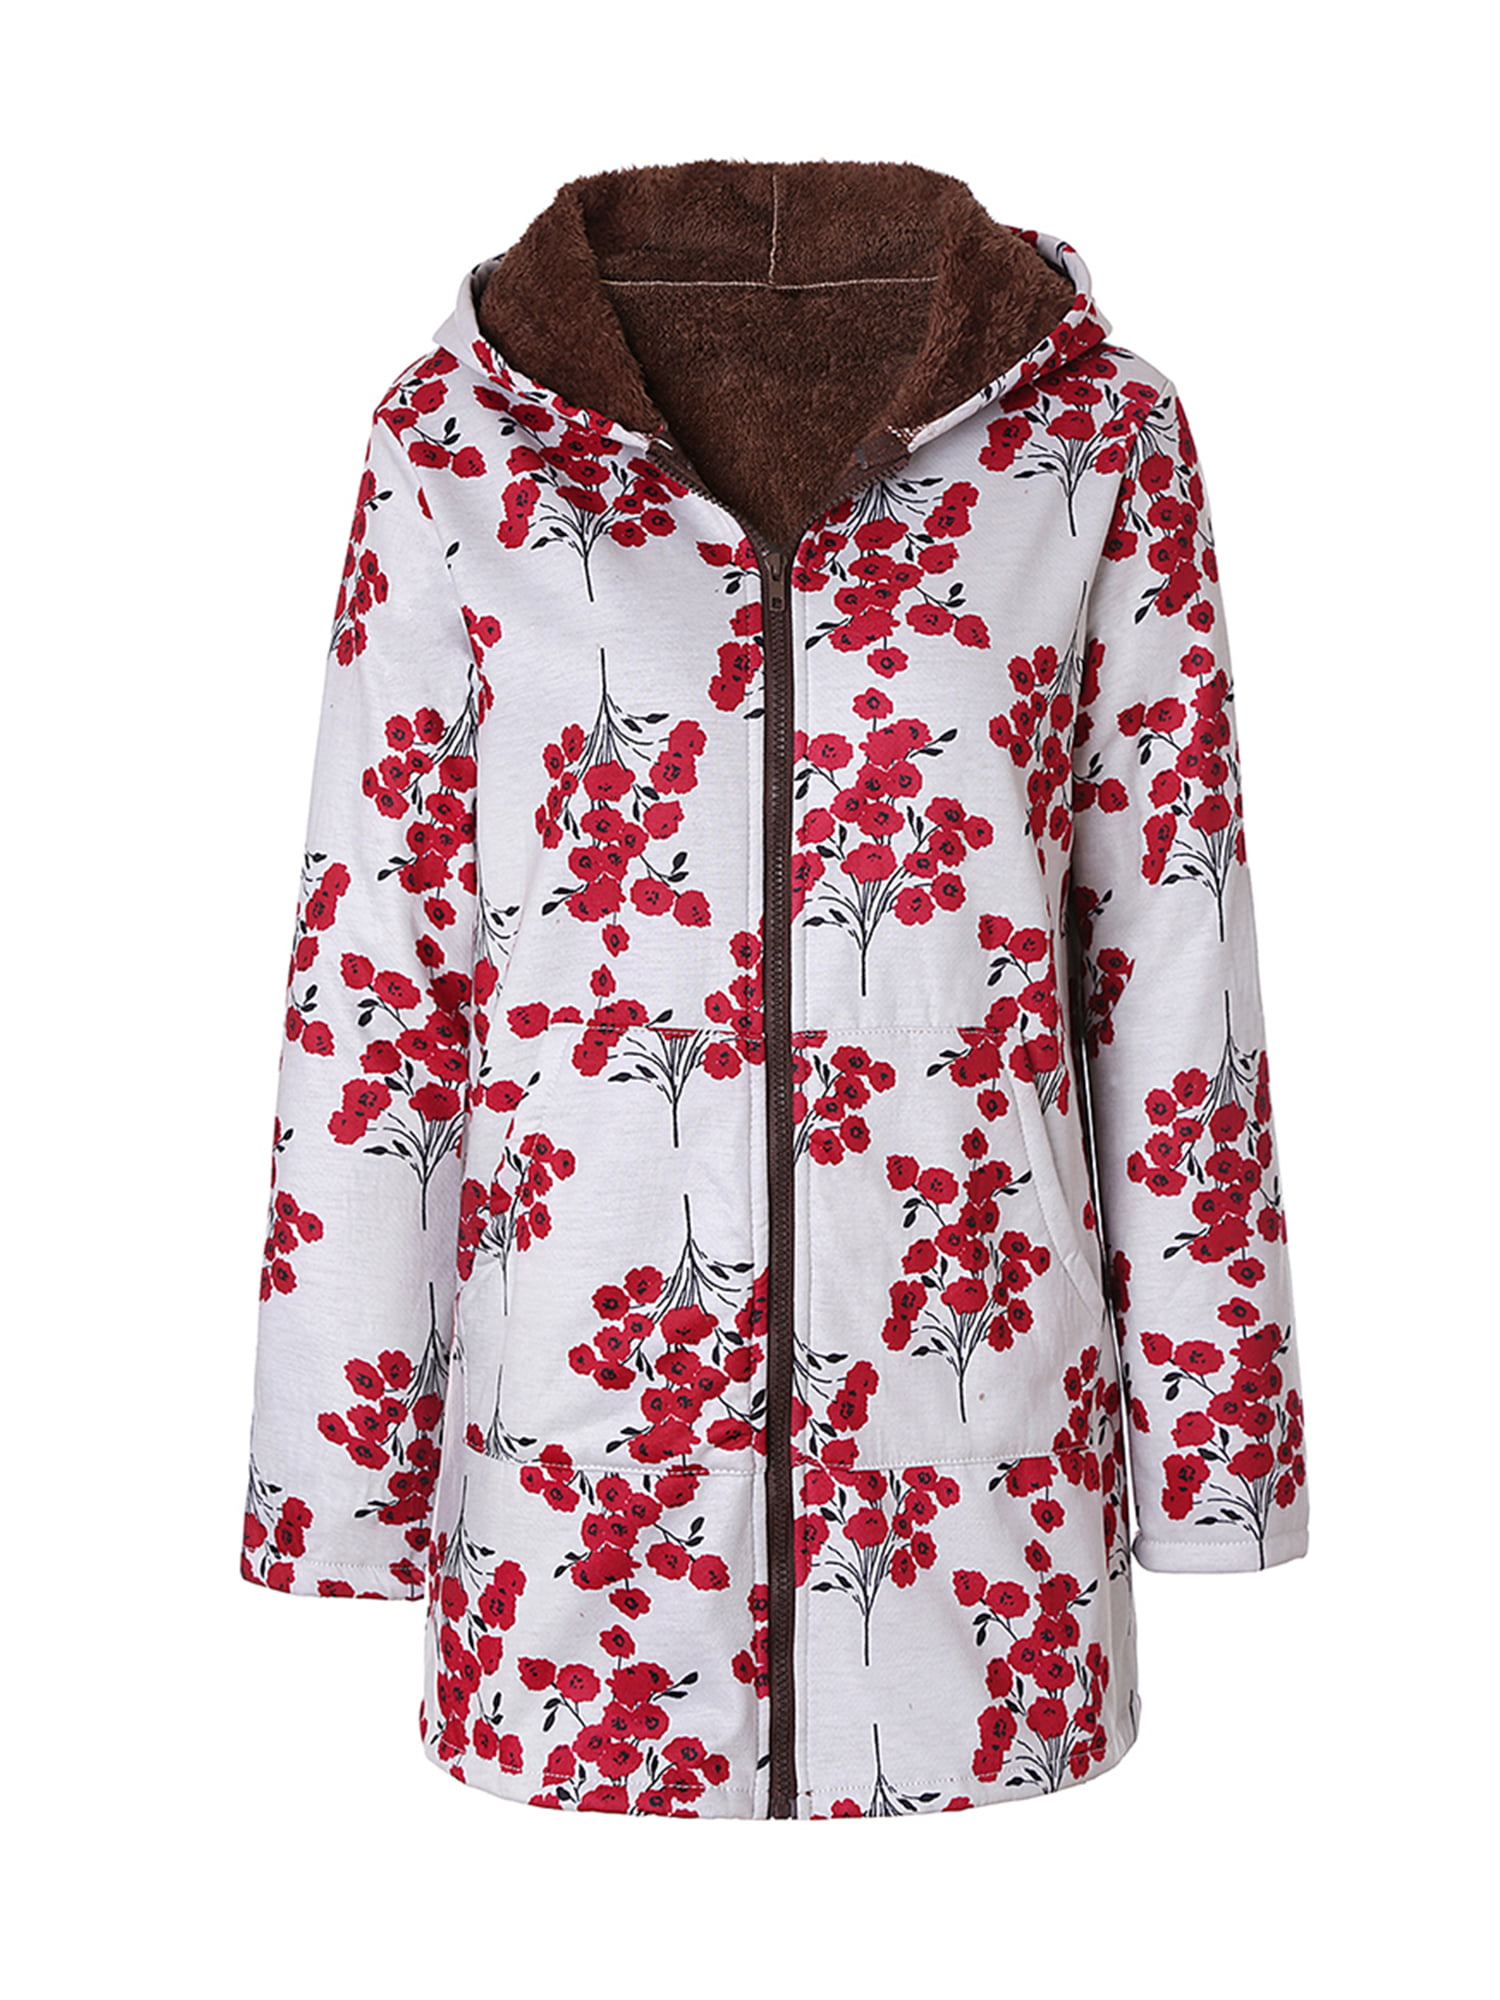 Women Ladies Warm Floral Print Coat Fleece Hooded Parka Jacket Outwear Plus Size 